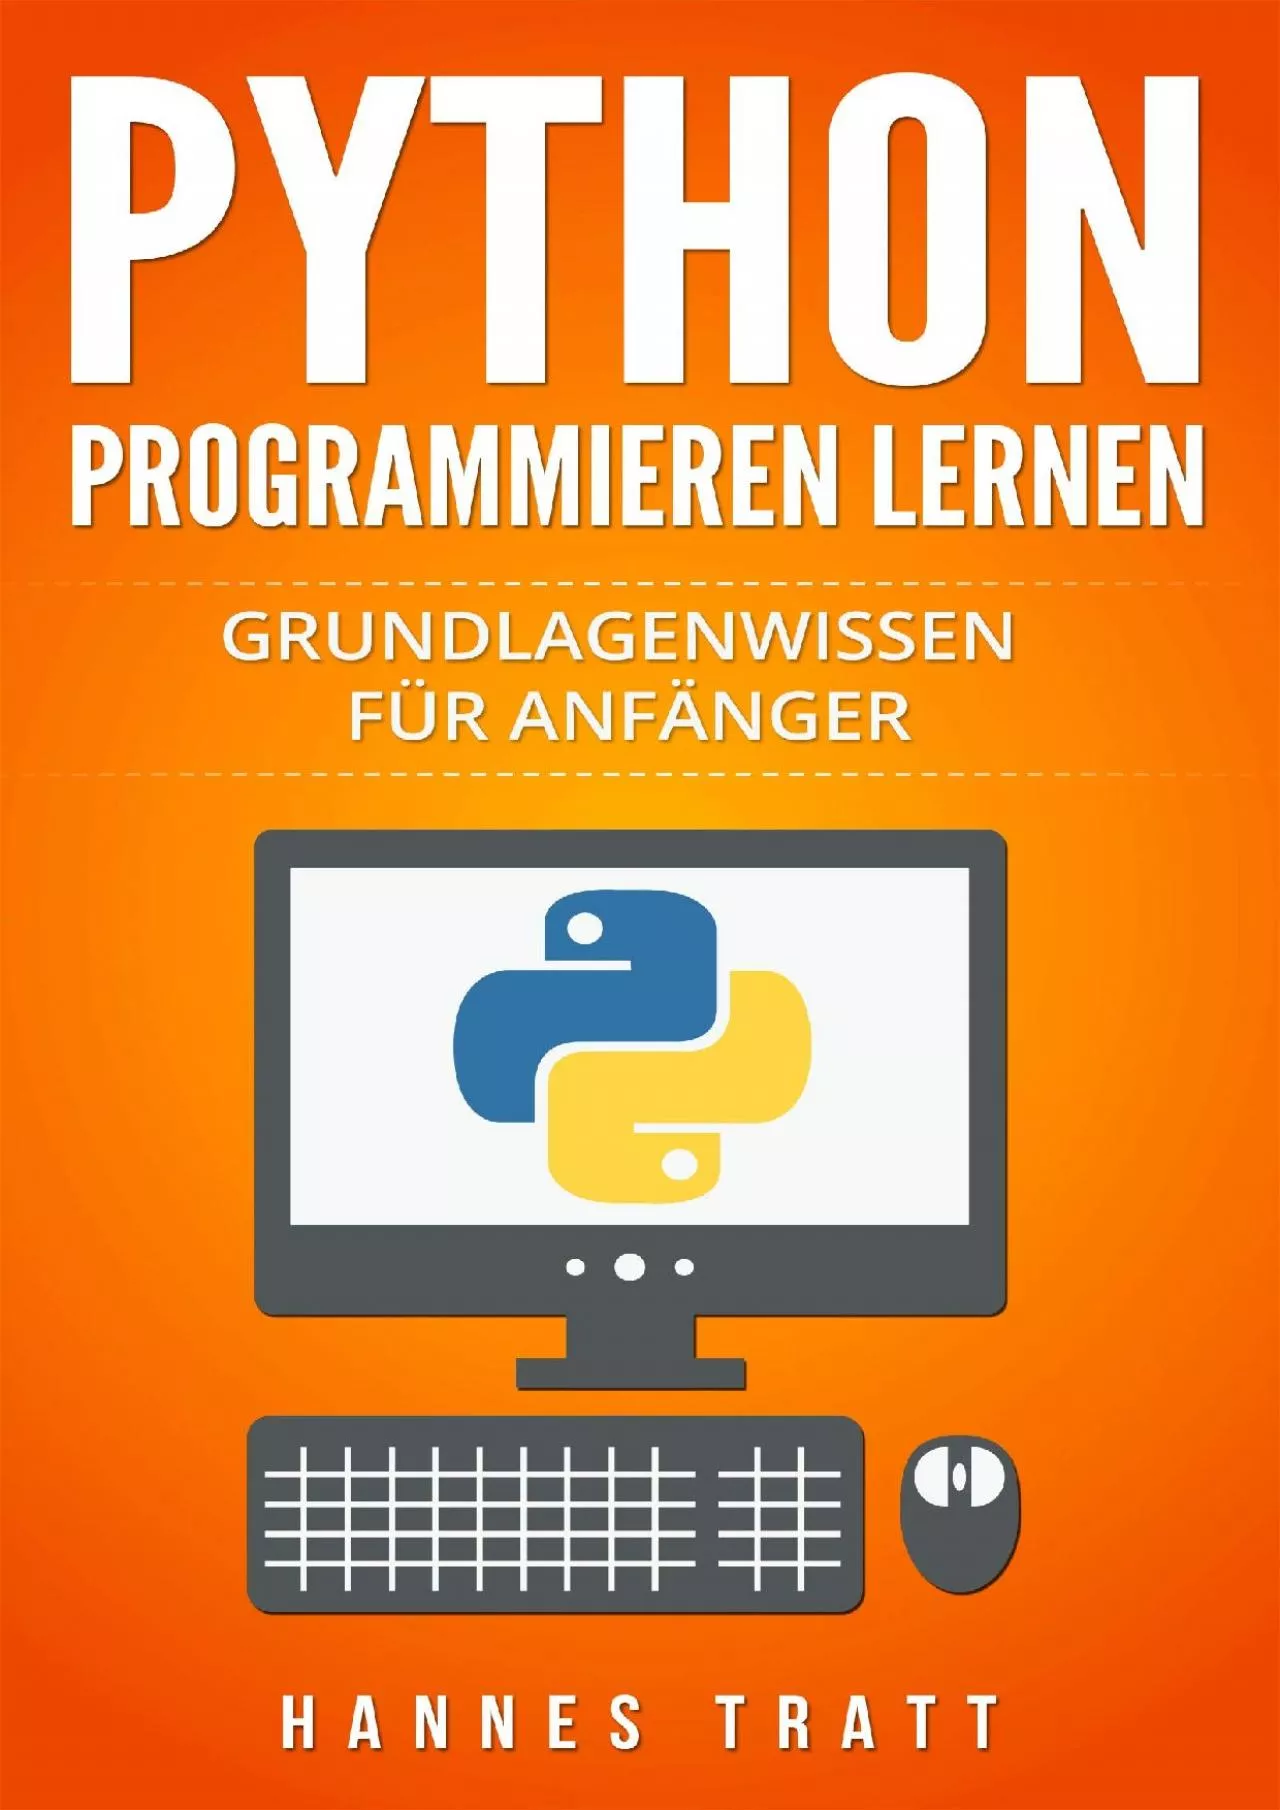 [PDF]-Python Programmieren lernen: Grundlagenwissen für Anfänger (German Edition)